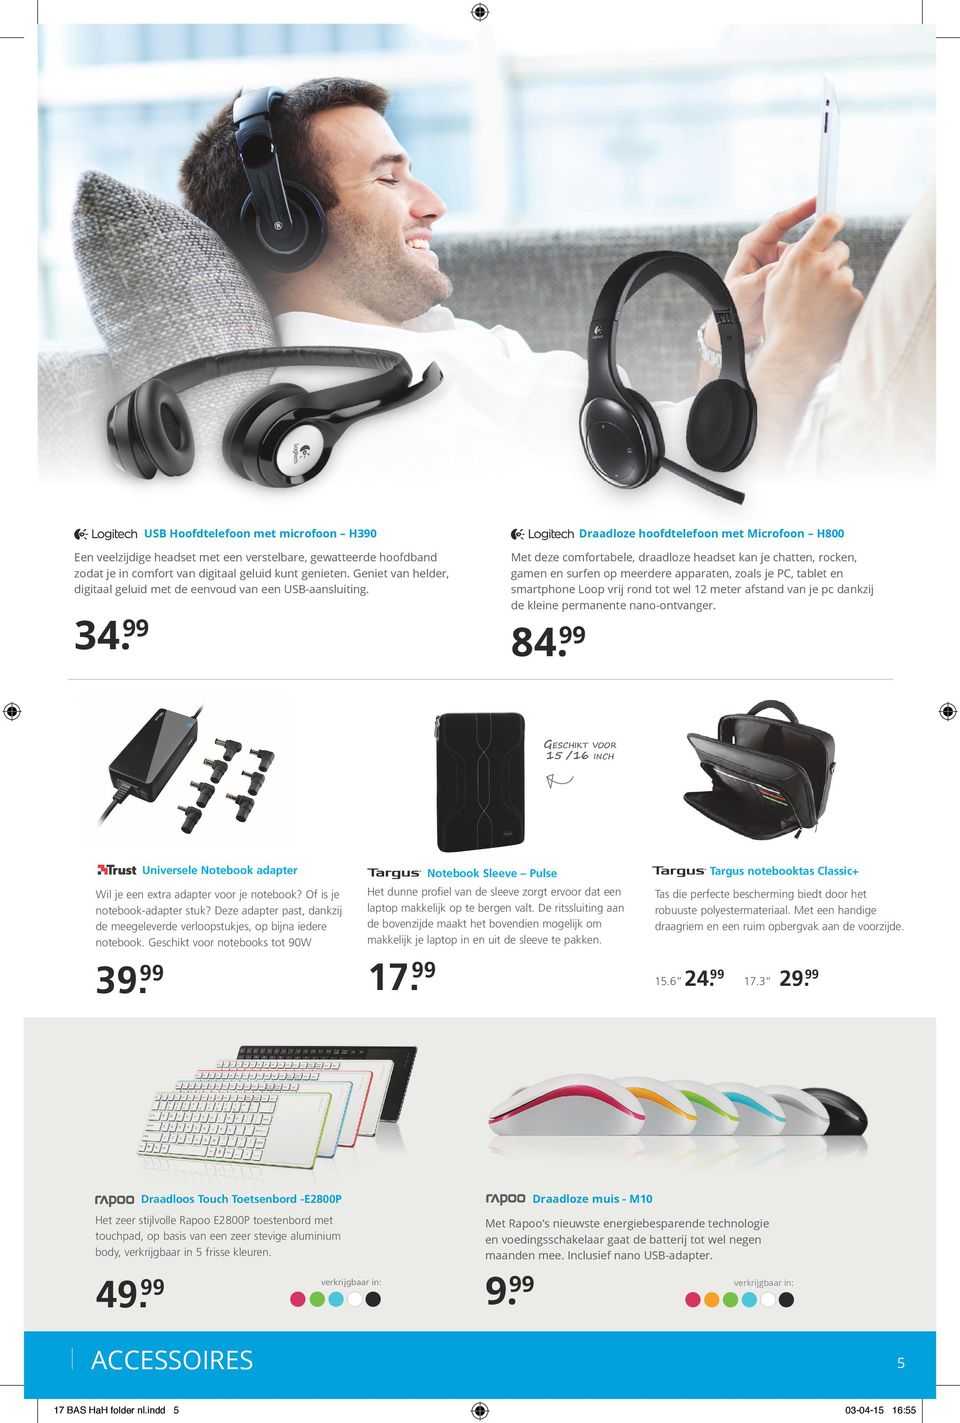 99 Met deze comfortabele, draadloze headset kan je chatten, rocken, gamen en surfen op meerdere apparaten, zoals je PC, tablet en smartphone Loop vrij rond tot wel 12 meter afstand van je pc dankzij